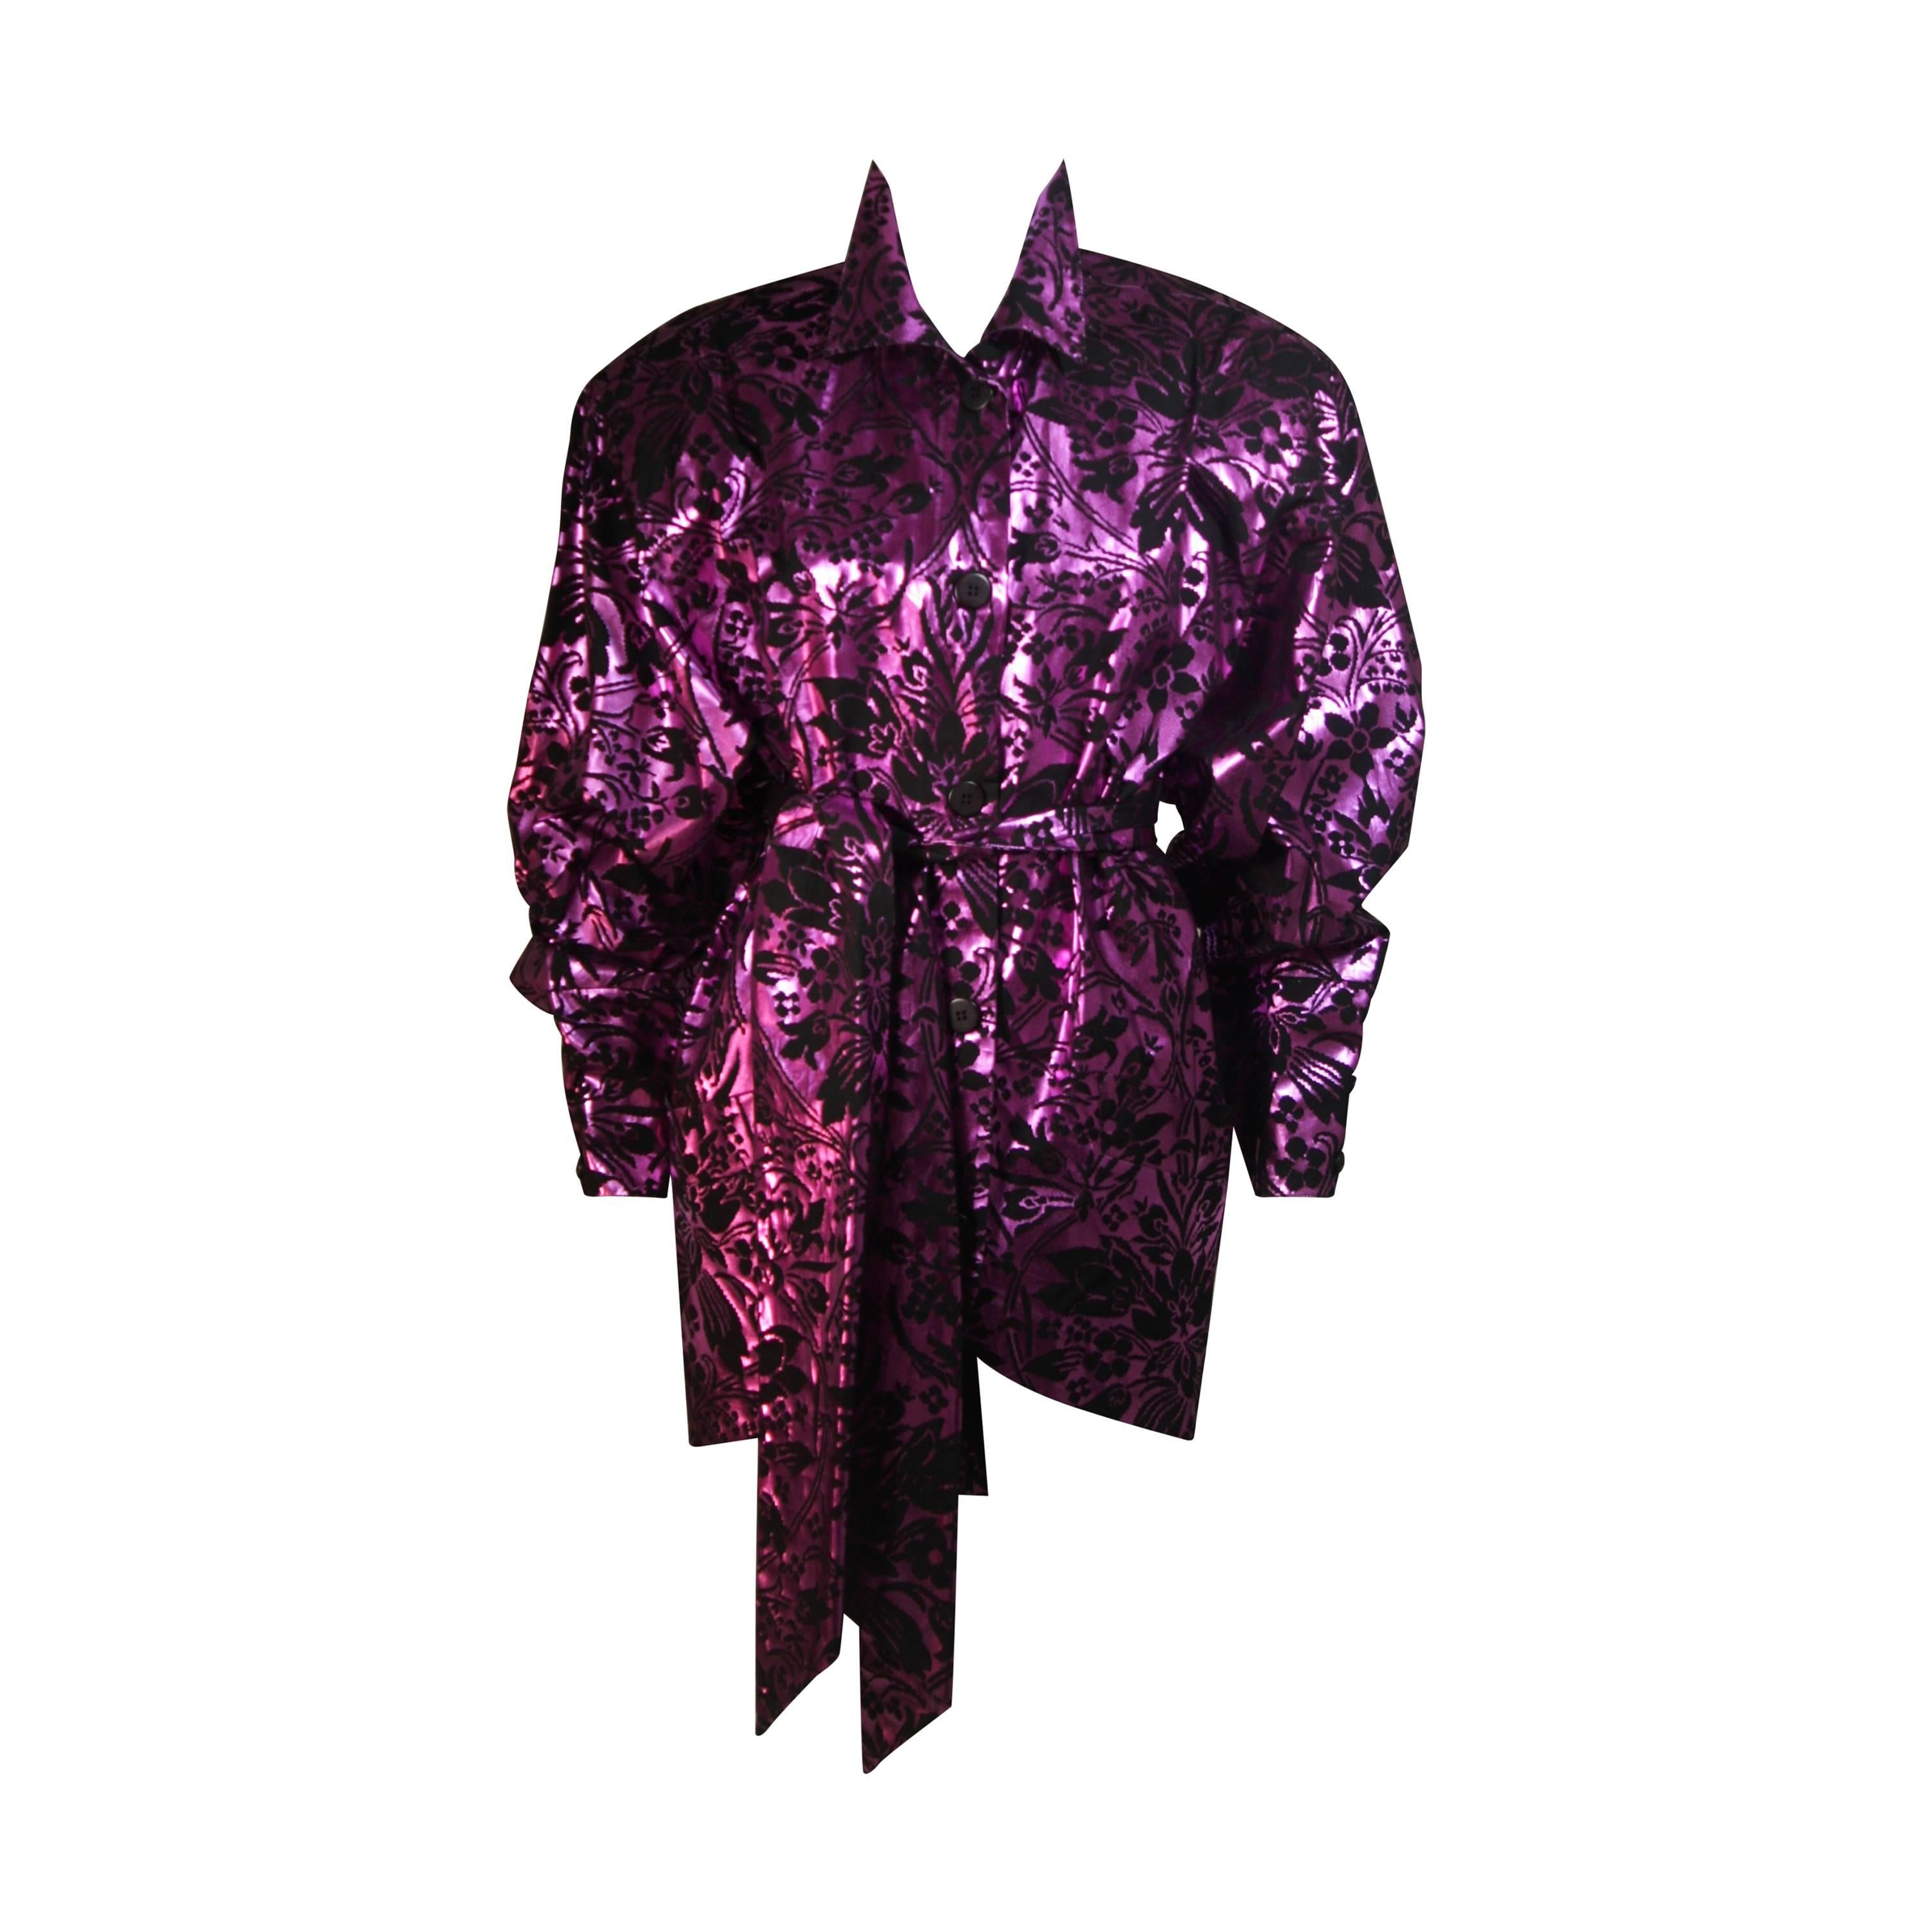 BYBLOS AMEN WARDY Purple Foiled Dress Jacket with Belt Size 44 IT